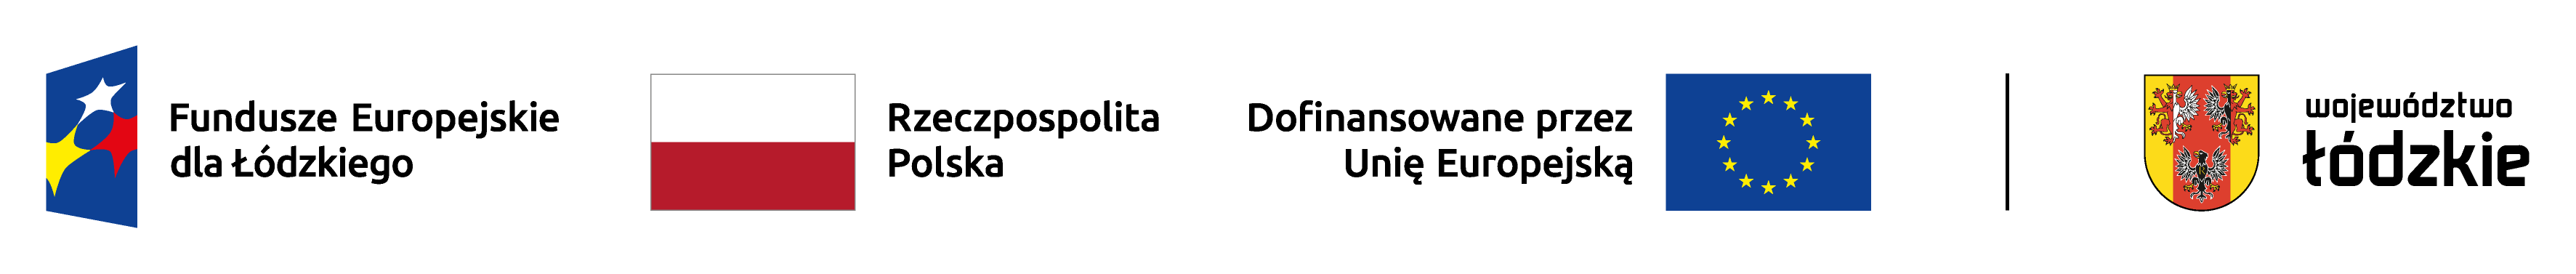 logotypy: Fundusze Europejskie dla Łódzkiego, Rzeczpospolita Polska, Dofinansowane przez Unię Europejską, Województwo Łódzkie